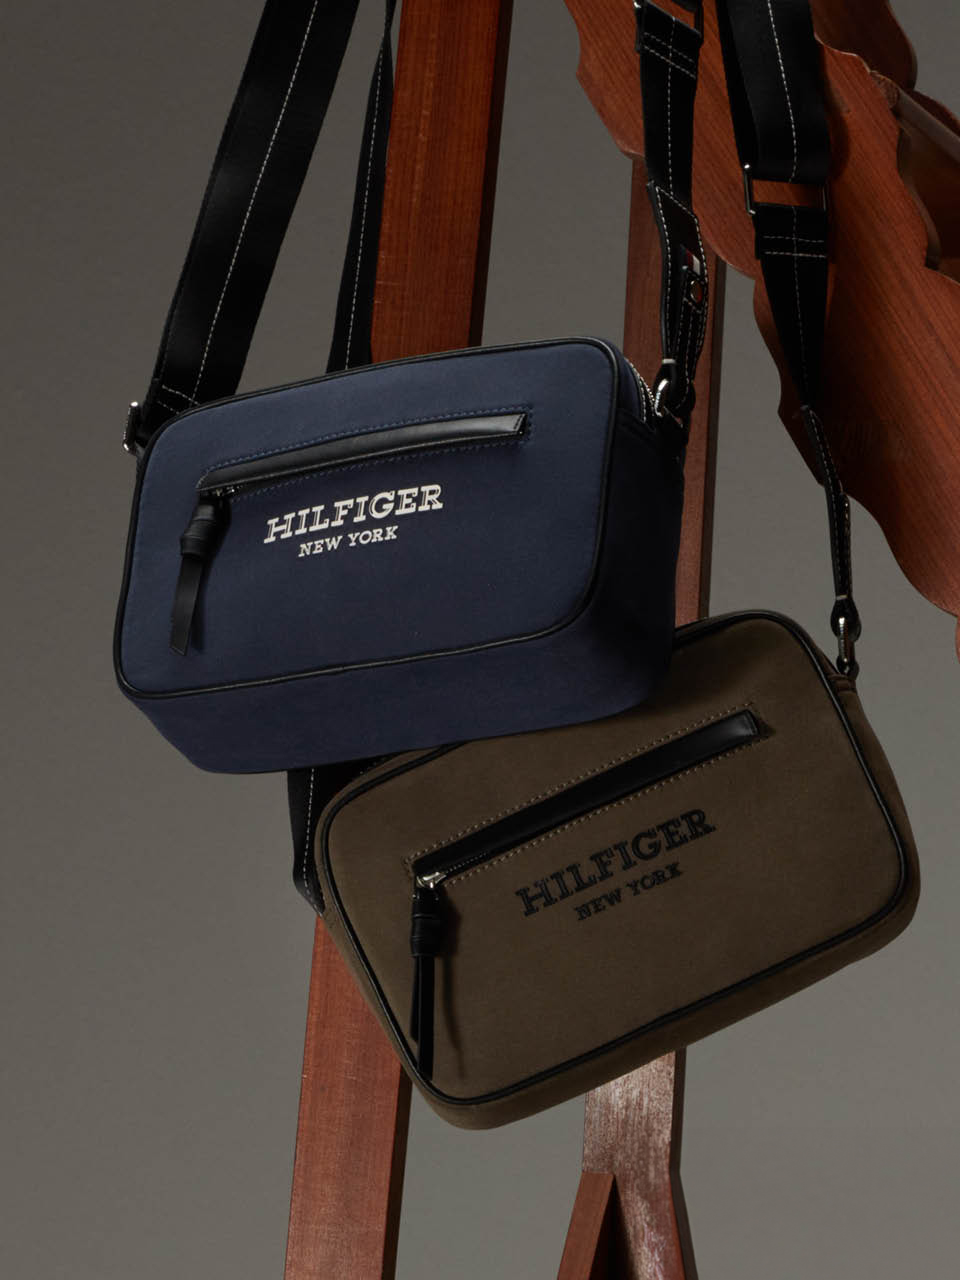 Tommy Hilfiger 60% OFF Handbags 16 – 17 Jul 2014